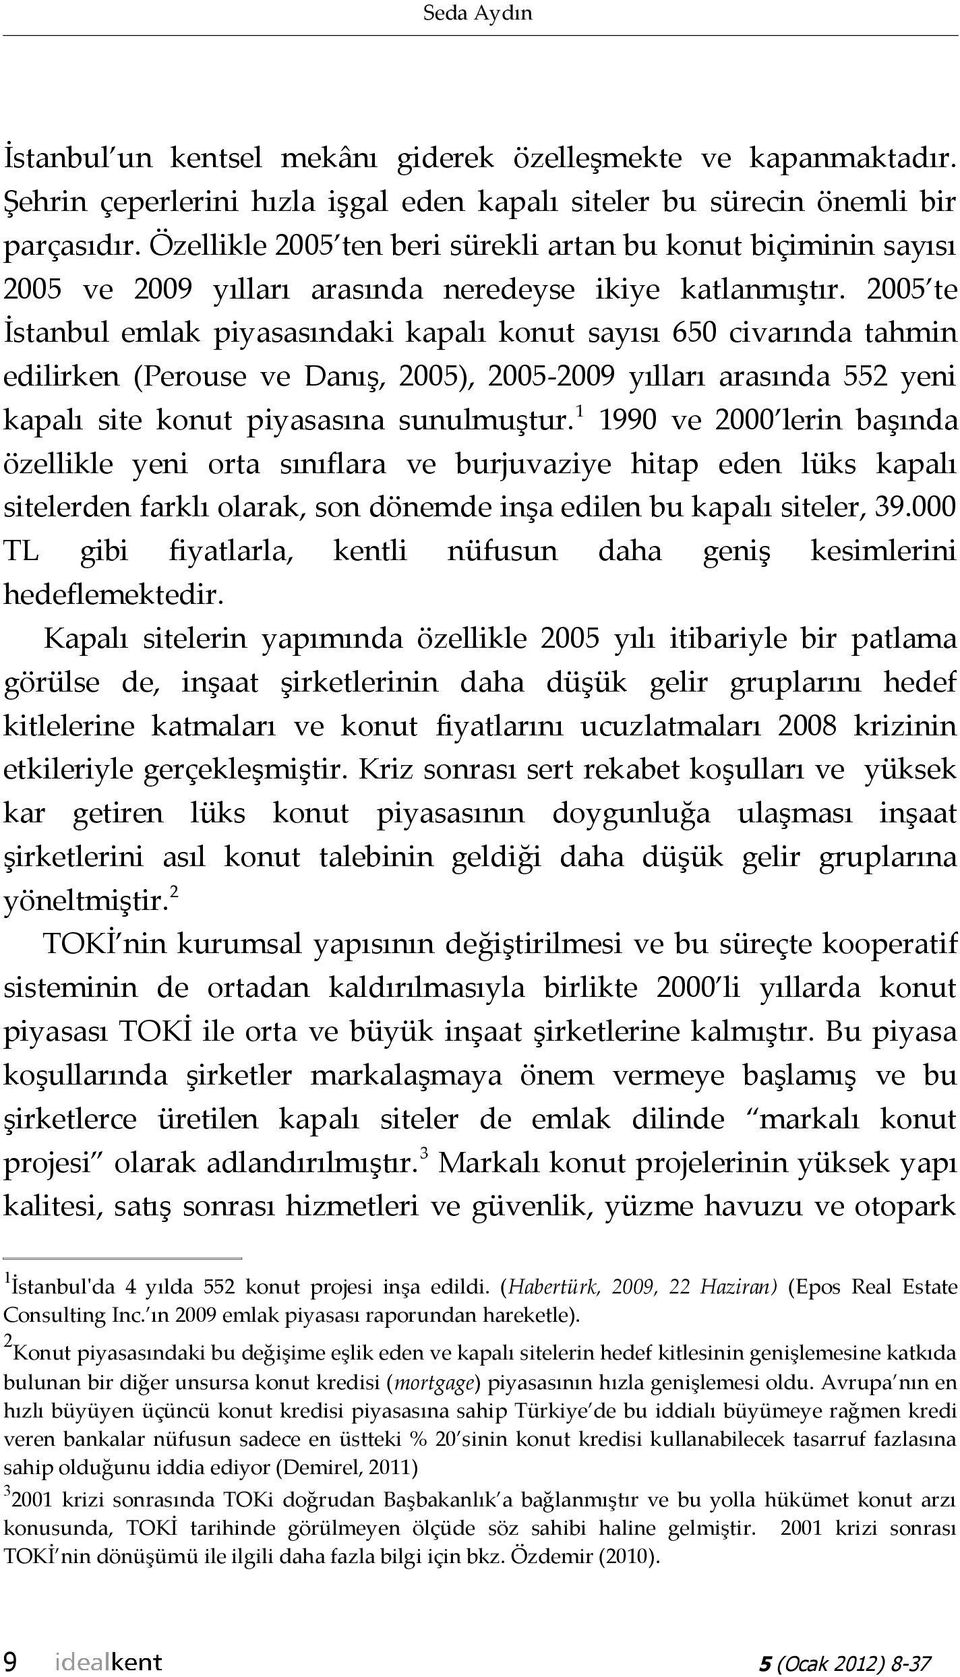 2005 te İstanbul emlak piyasasındaki kapalı konut sayısı 650 civarında tahmin edilirken (Perouse ve Danış, 2005), 2005-2009 yılları arasında 552 yeni kapalı site konut piyasasına sunulmuştur.